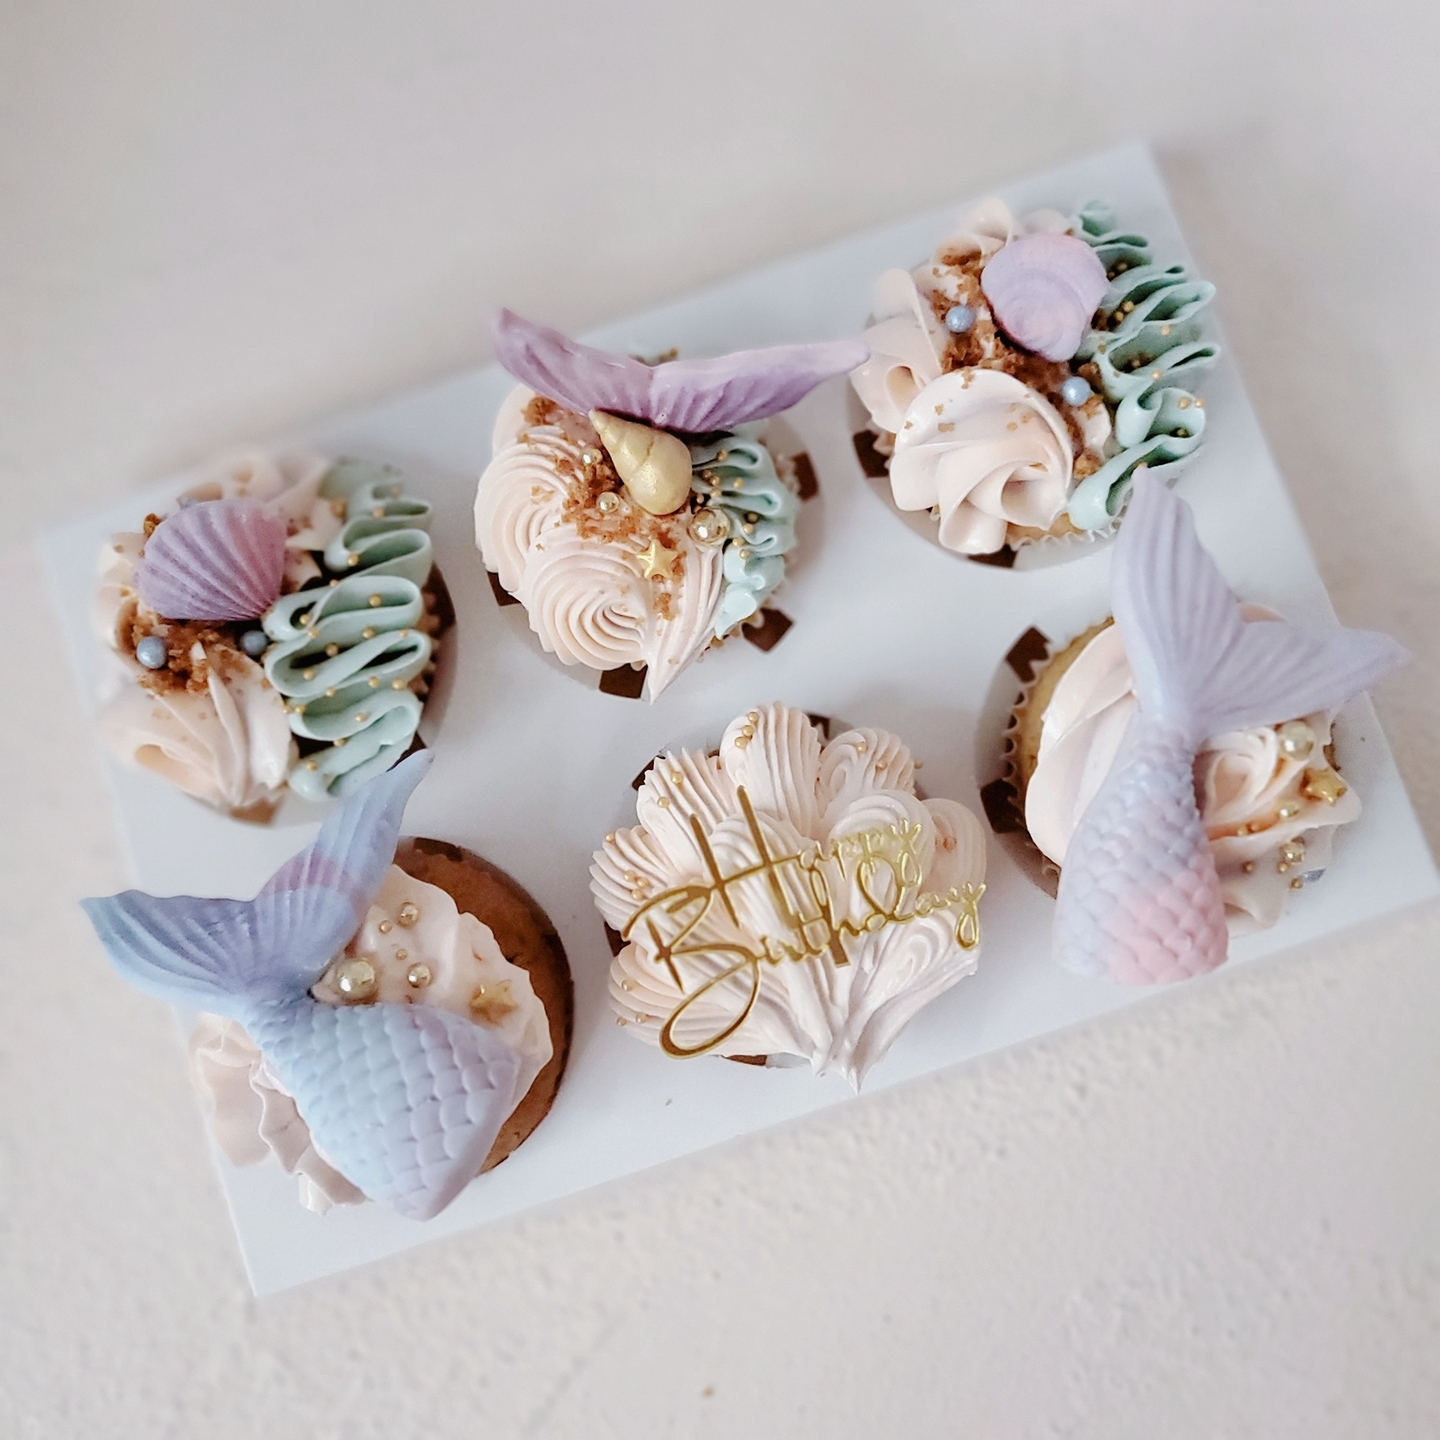 Mermaid Themed Cupcakes In Pastel Tones